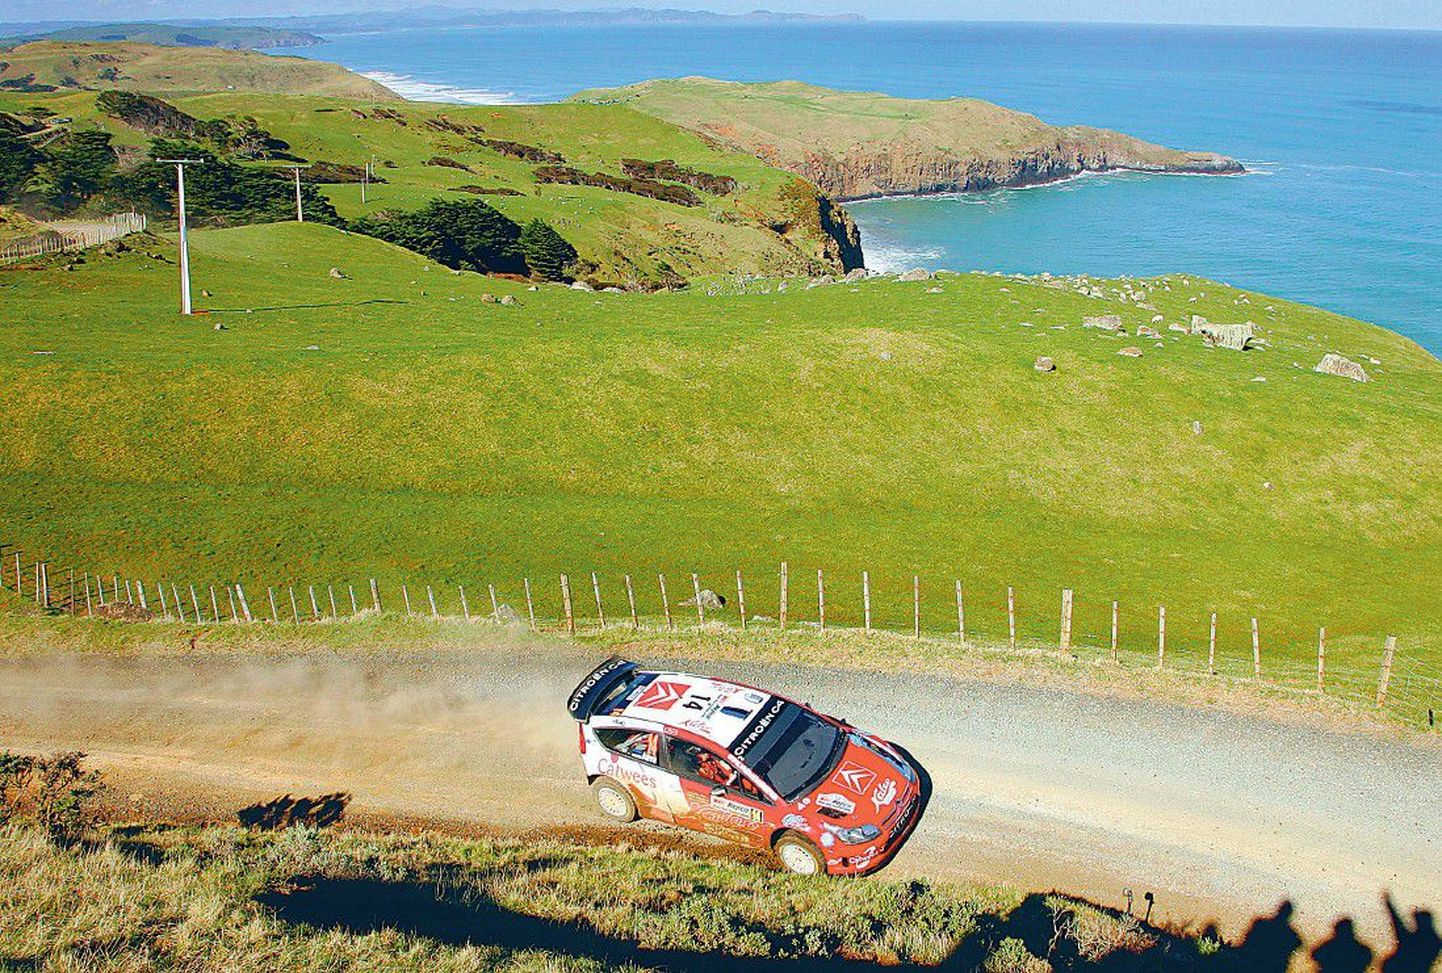 Urmo Aava ja Kuldar Sikk kihutasid Uus-Meremaa maalilisel maastikul kulgenud radadel viienda koha vääriliselt.